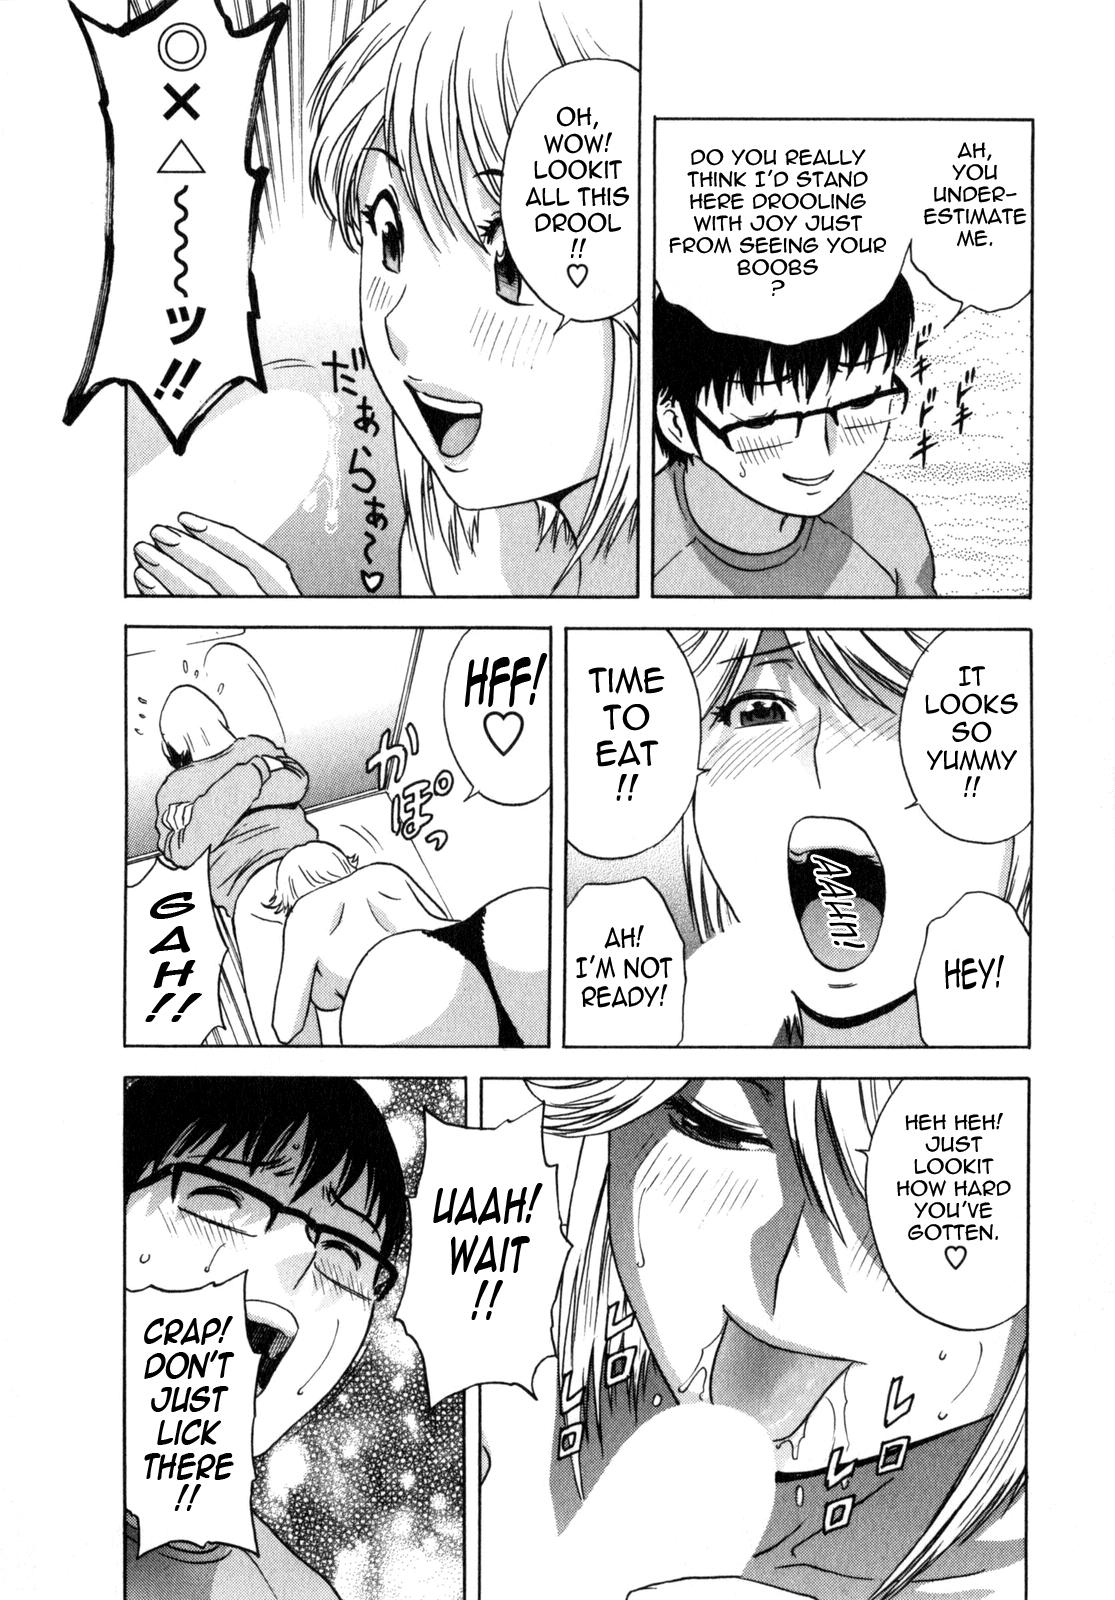 Manga no youna Hitozuma to no Hibi - Days with Married Women such as Comics. 32